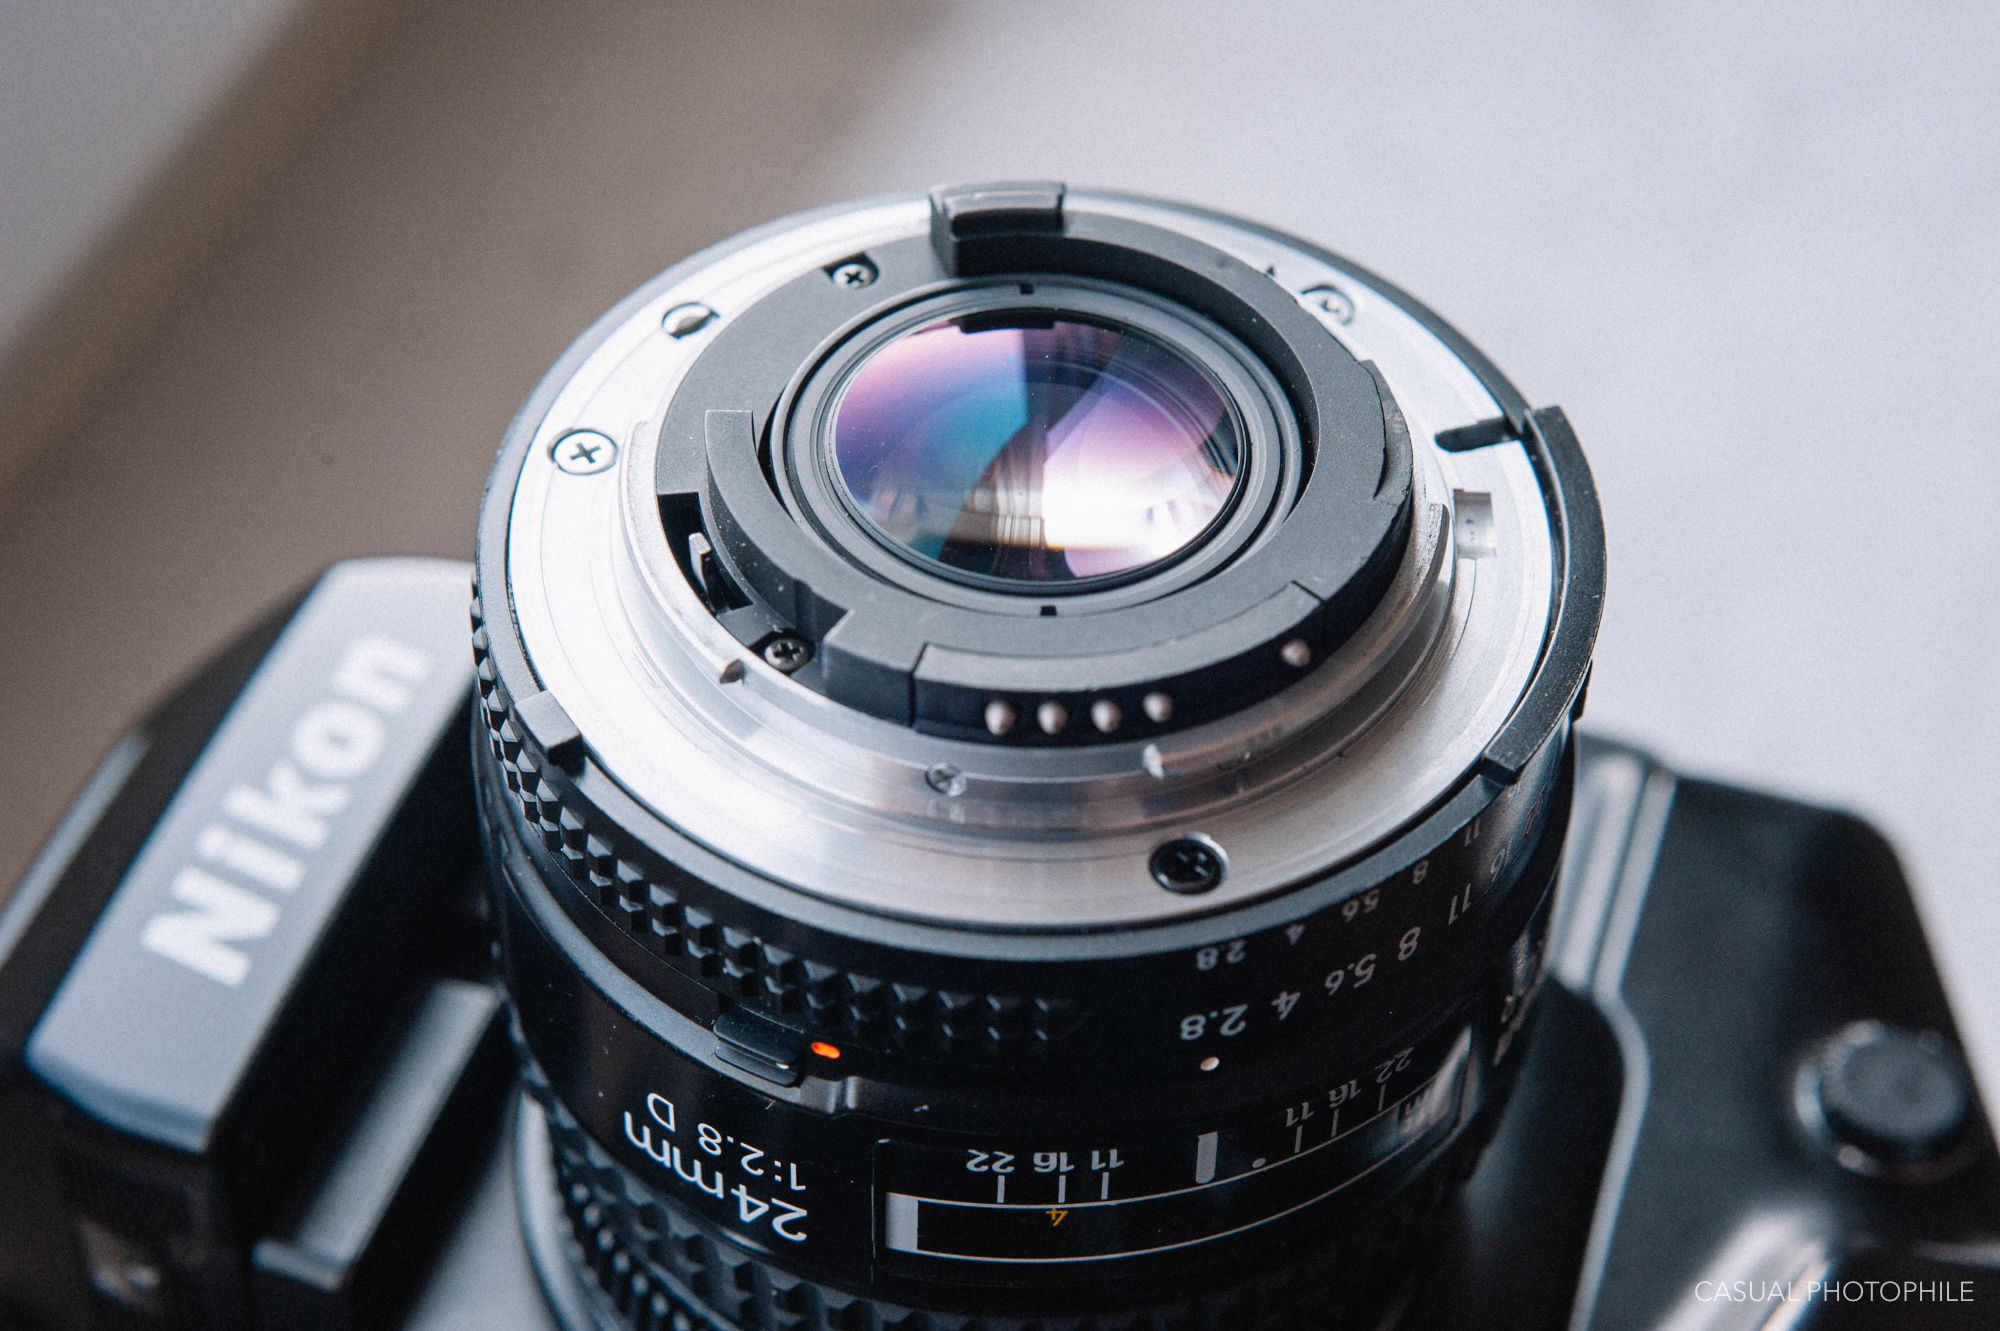 The AF Nikkor 24mm F/2.8D is Nikon's Best Value Wide-Angle Lens